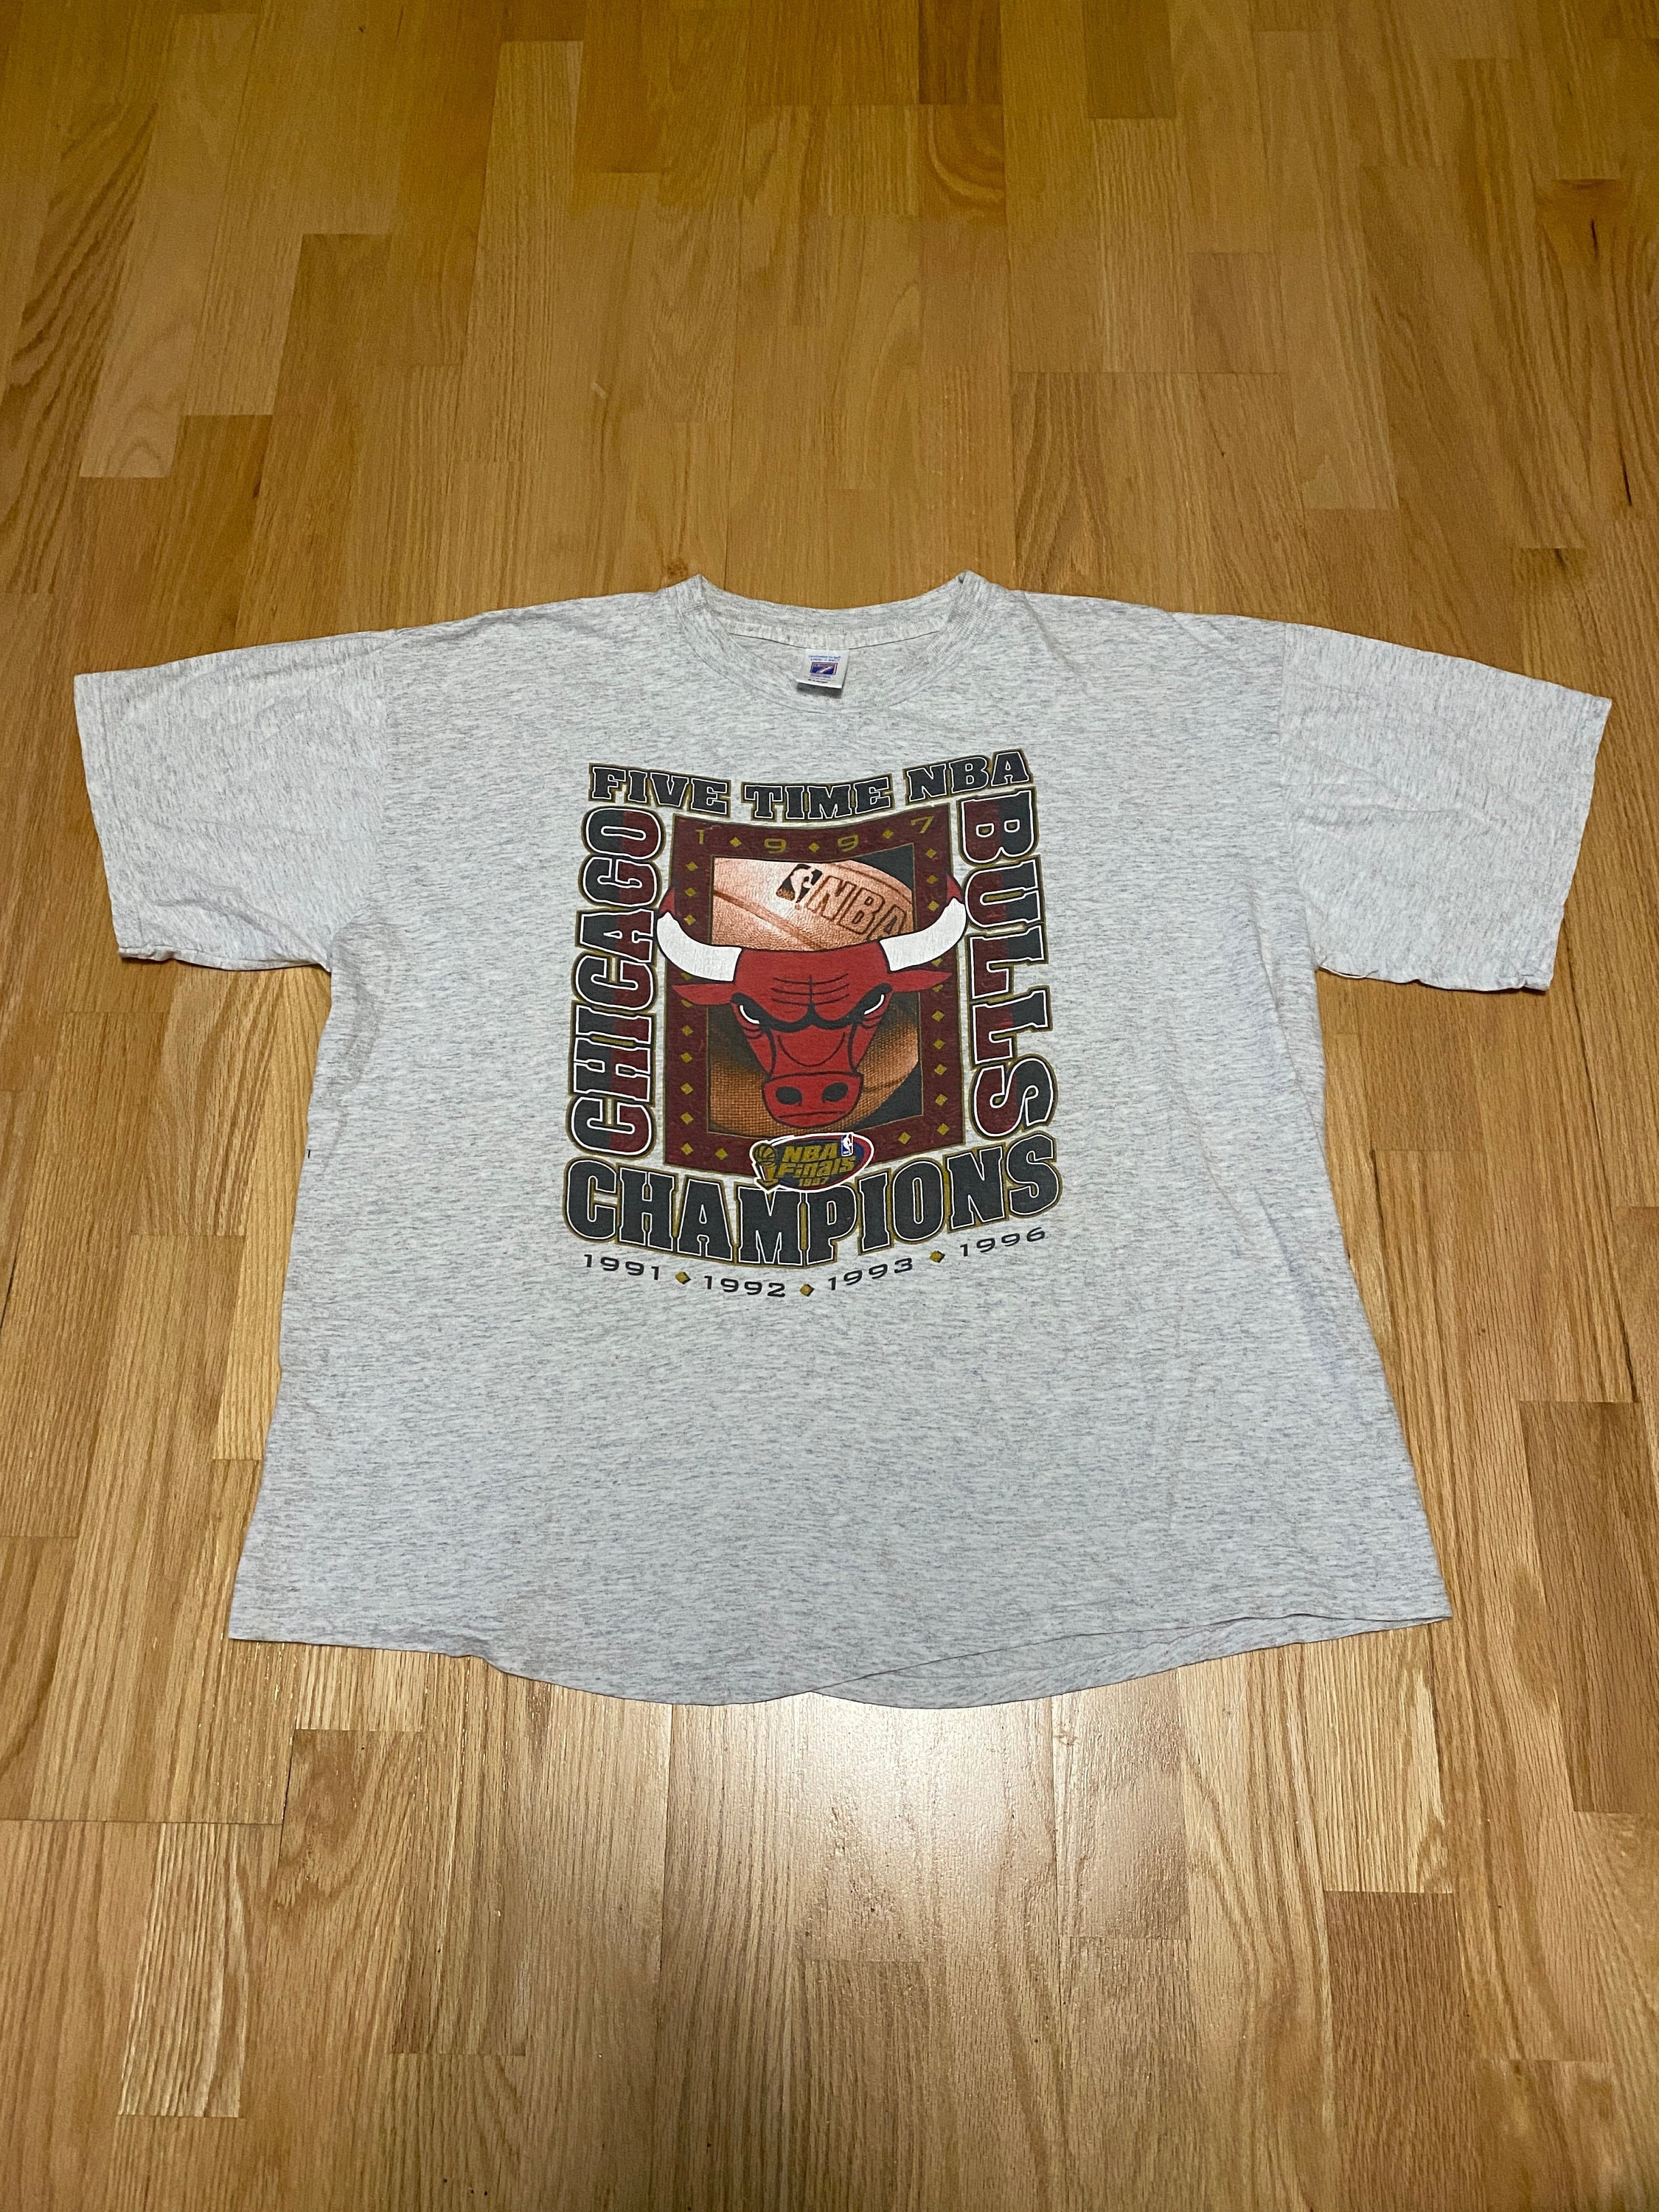 1997 Nba Champions Shirt, Chicago Bulls Shirt 1991 1992 1993 1996 Nba Champs  Shirt